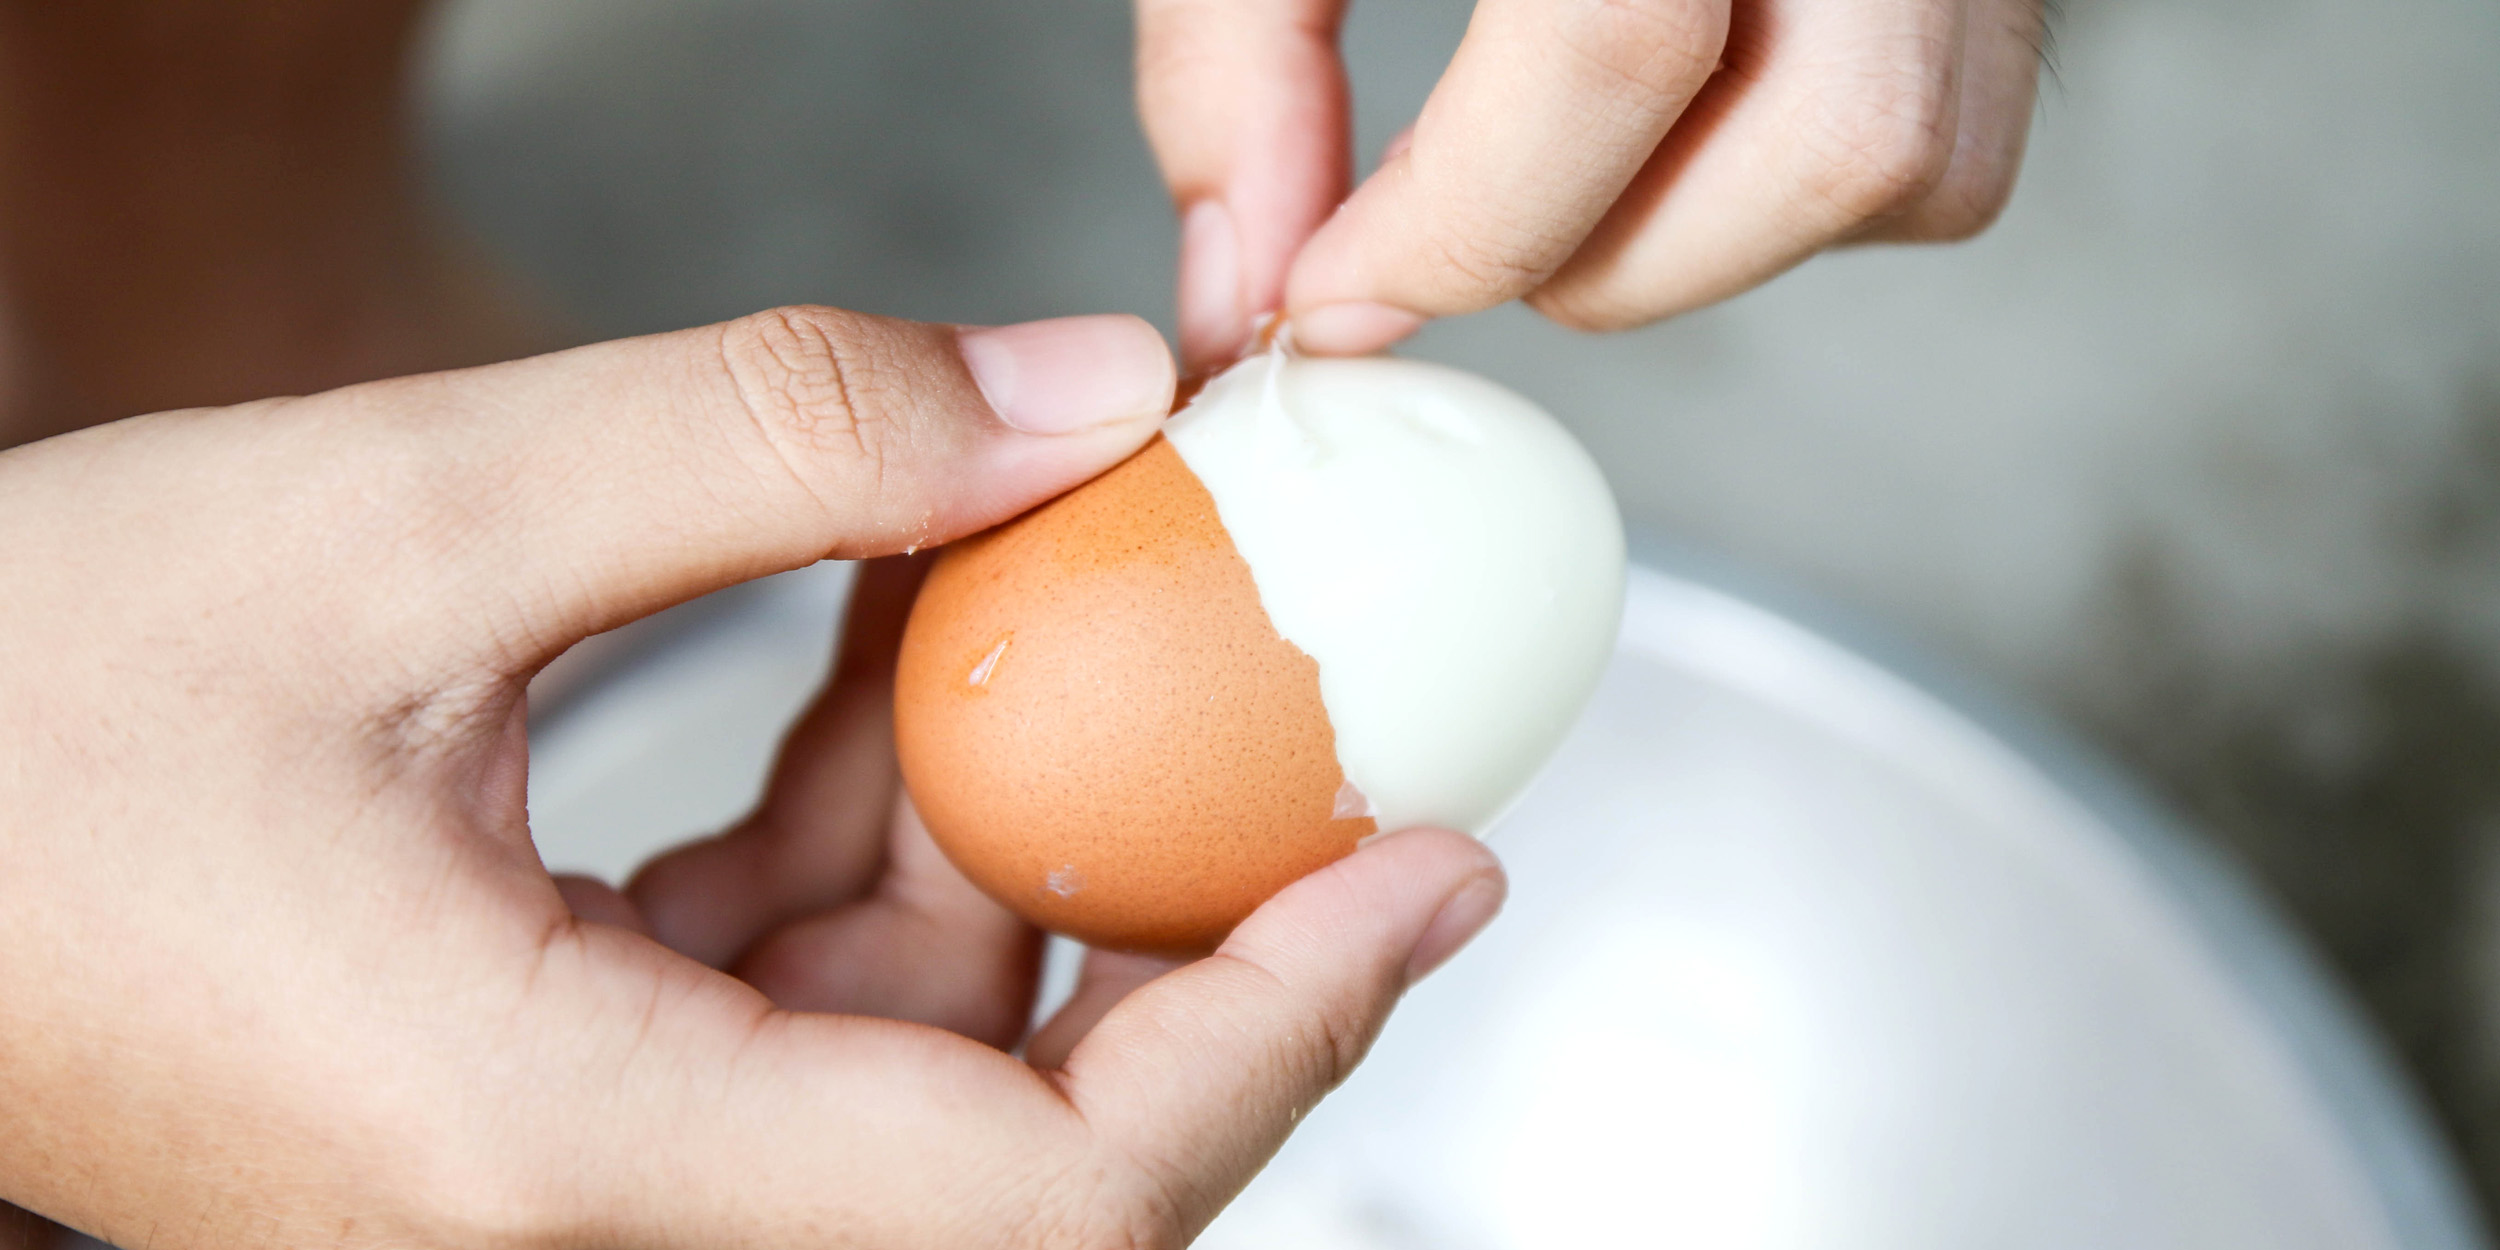 Фотография куриного яйца побила рекорд по лайкам в Instagram - вторсырье-м.рф